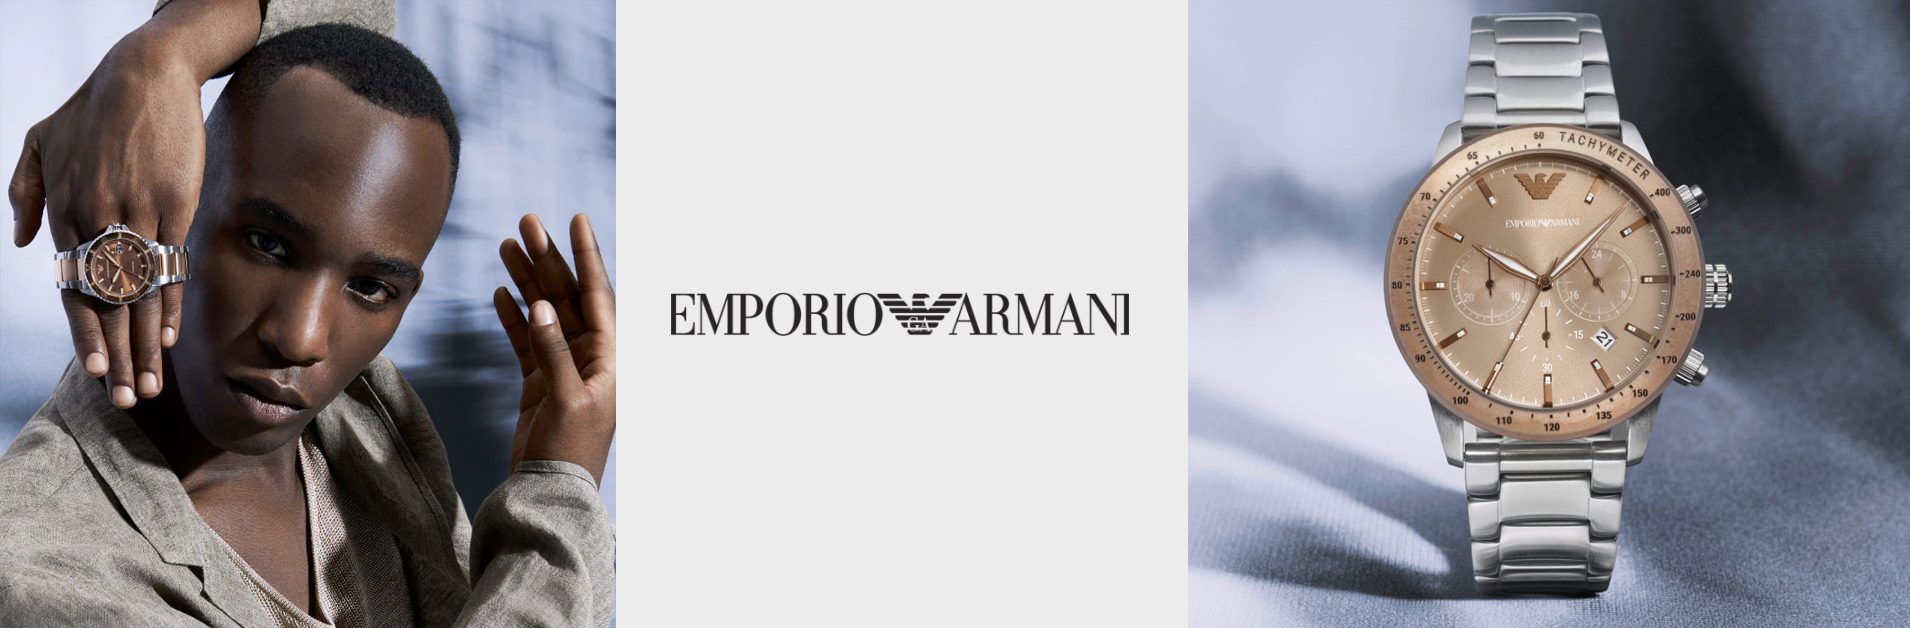 Описание и история бренда Emporio Armani — информация о